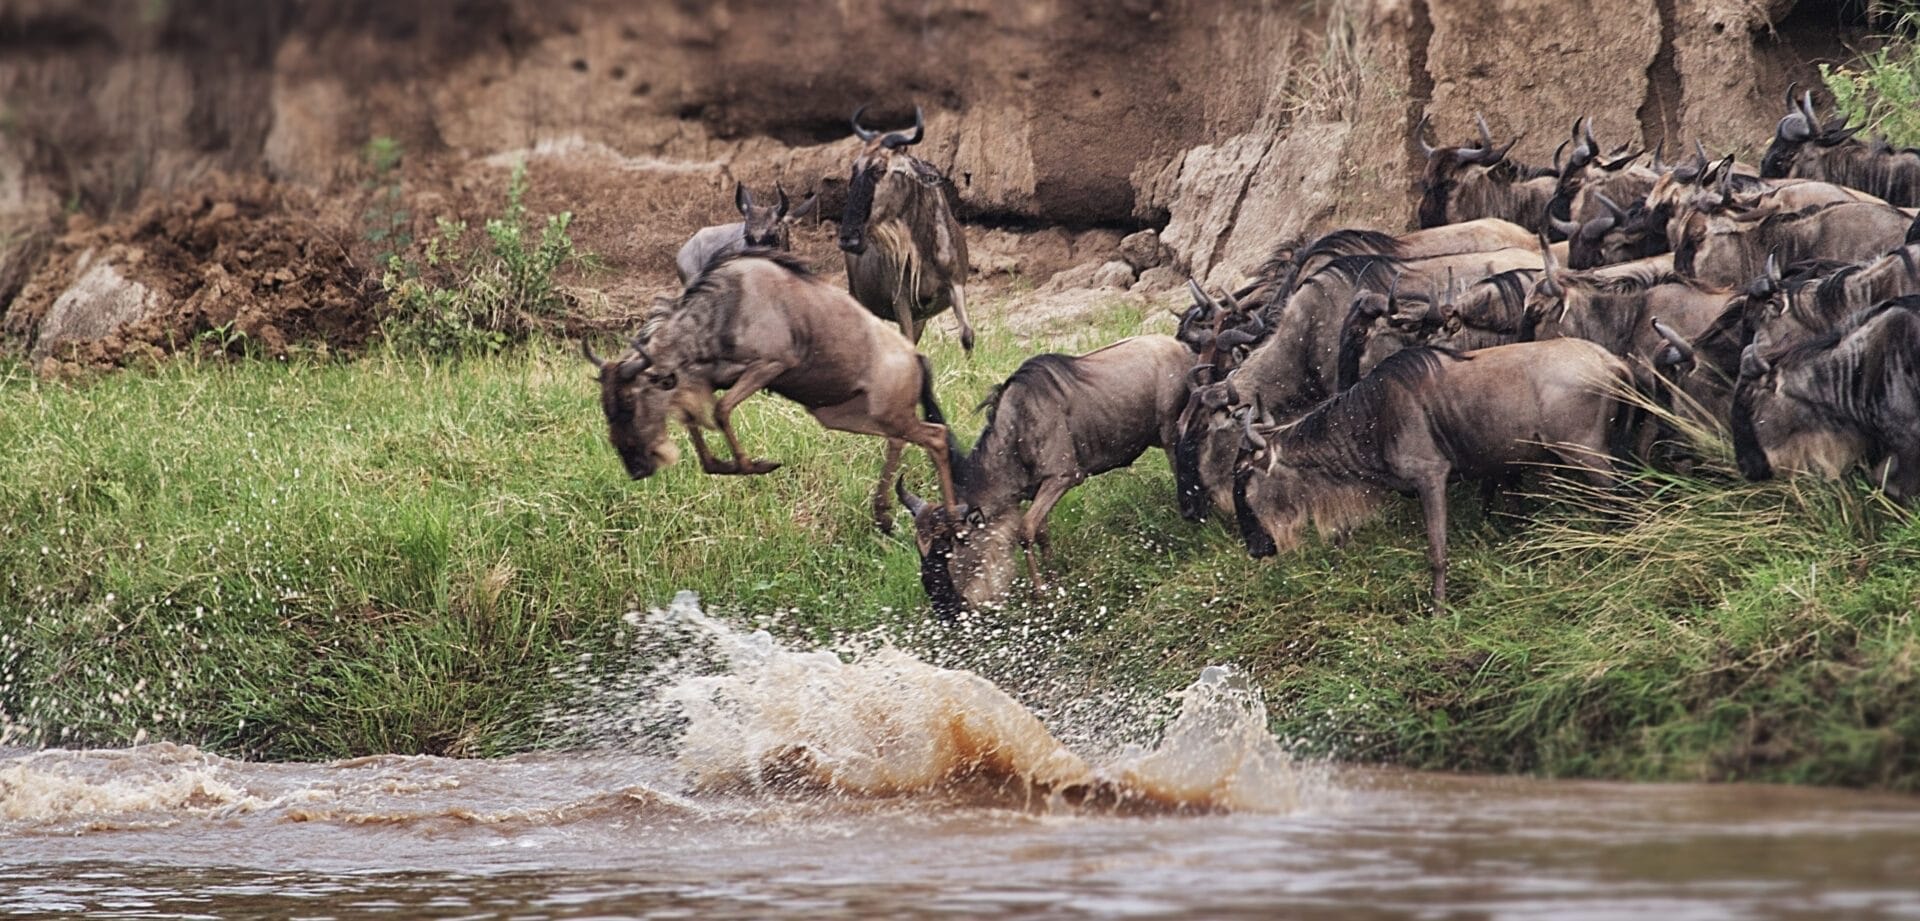 Serengeti in October | Discover Africa Safaris